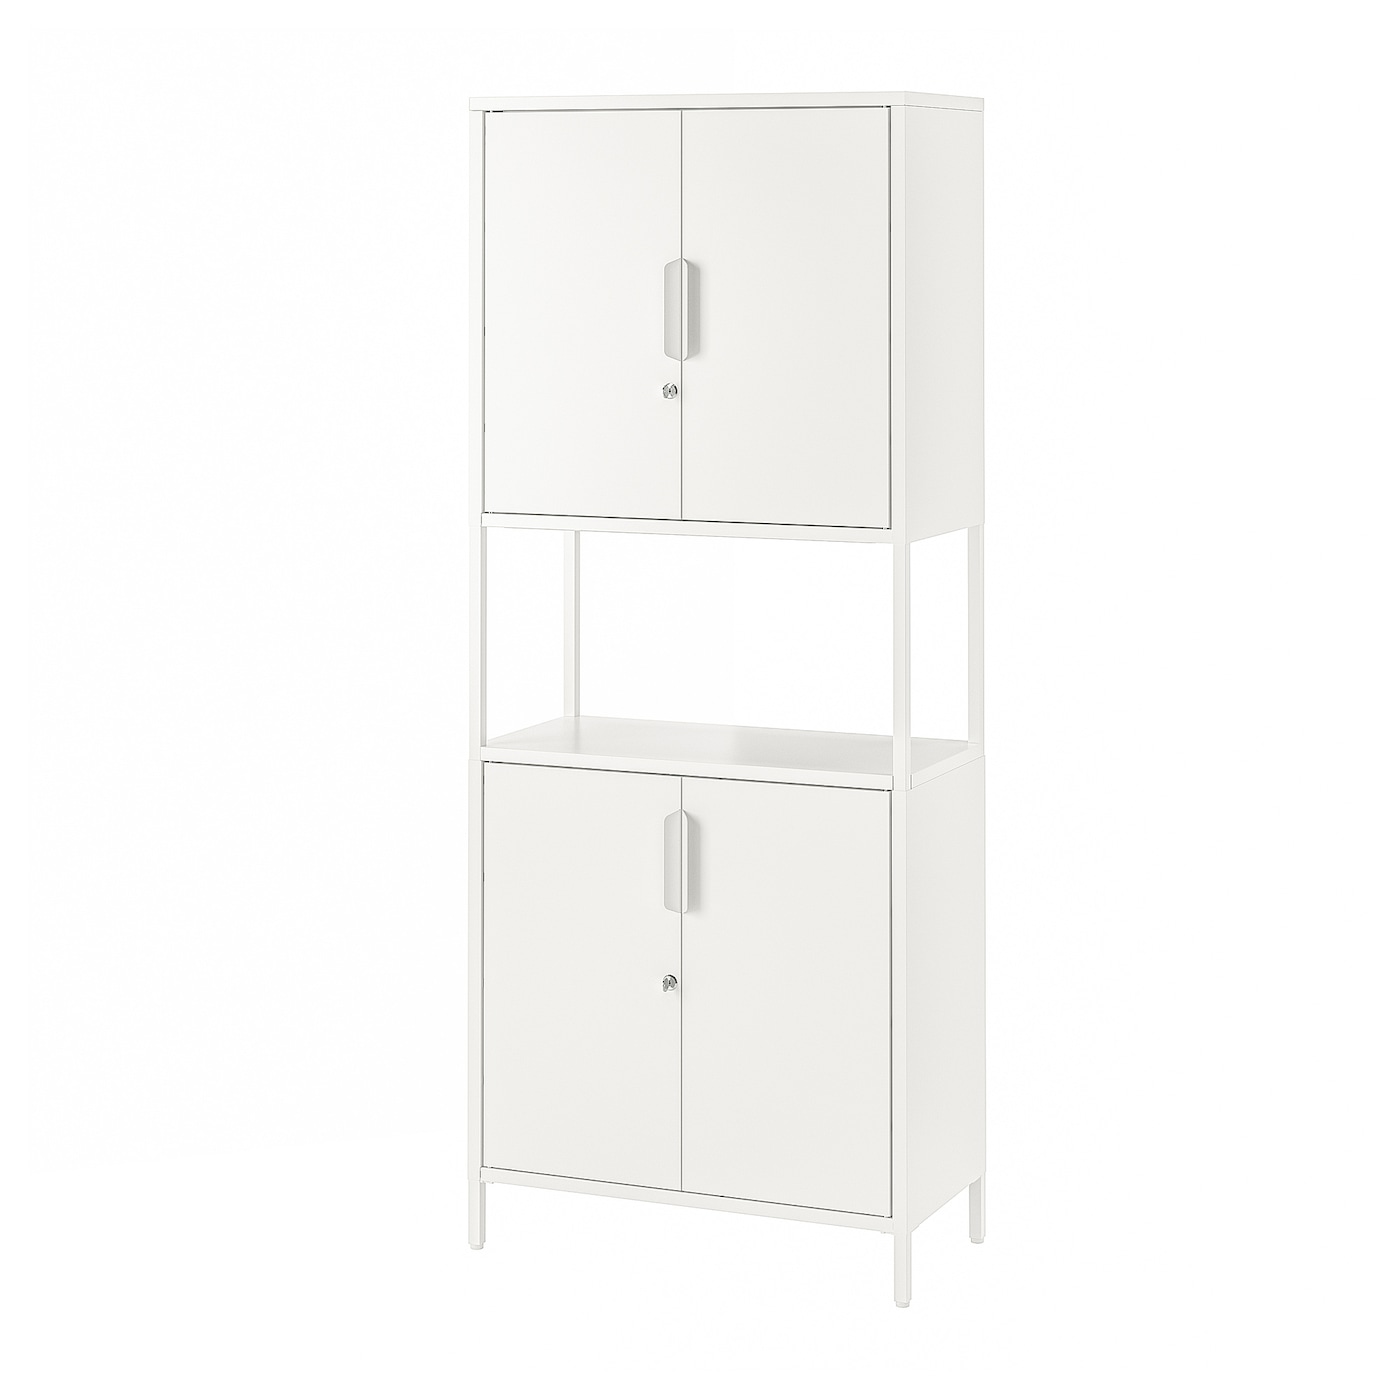 Шкаф - TROTTEN IKEA/ ТРОТТЕН ИКЕА,  173х70 см, белый